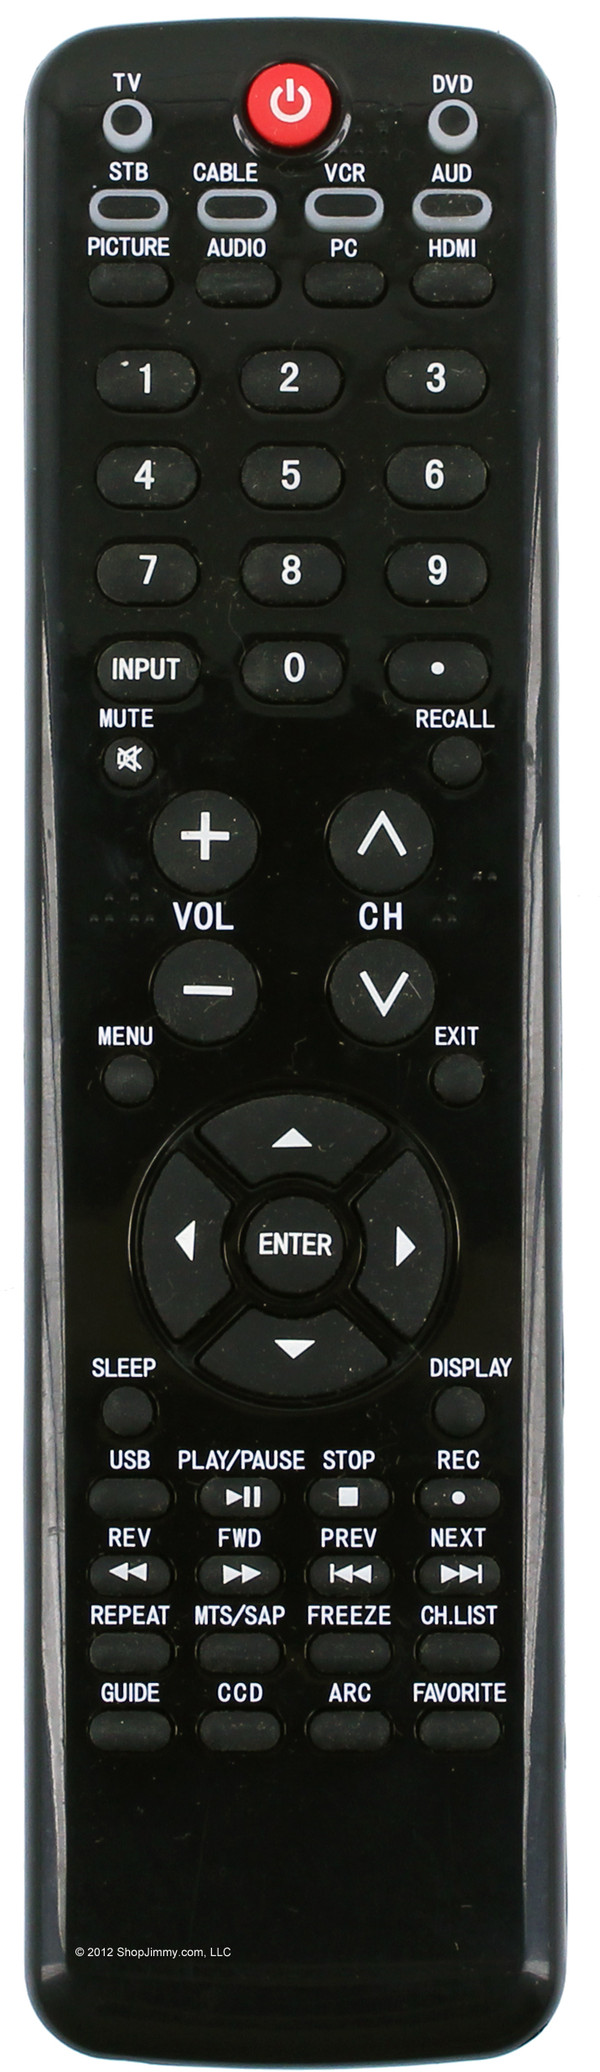 Haier TV-5620-88 (HTR-D11, 0094001281) Remote Control